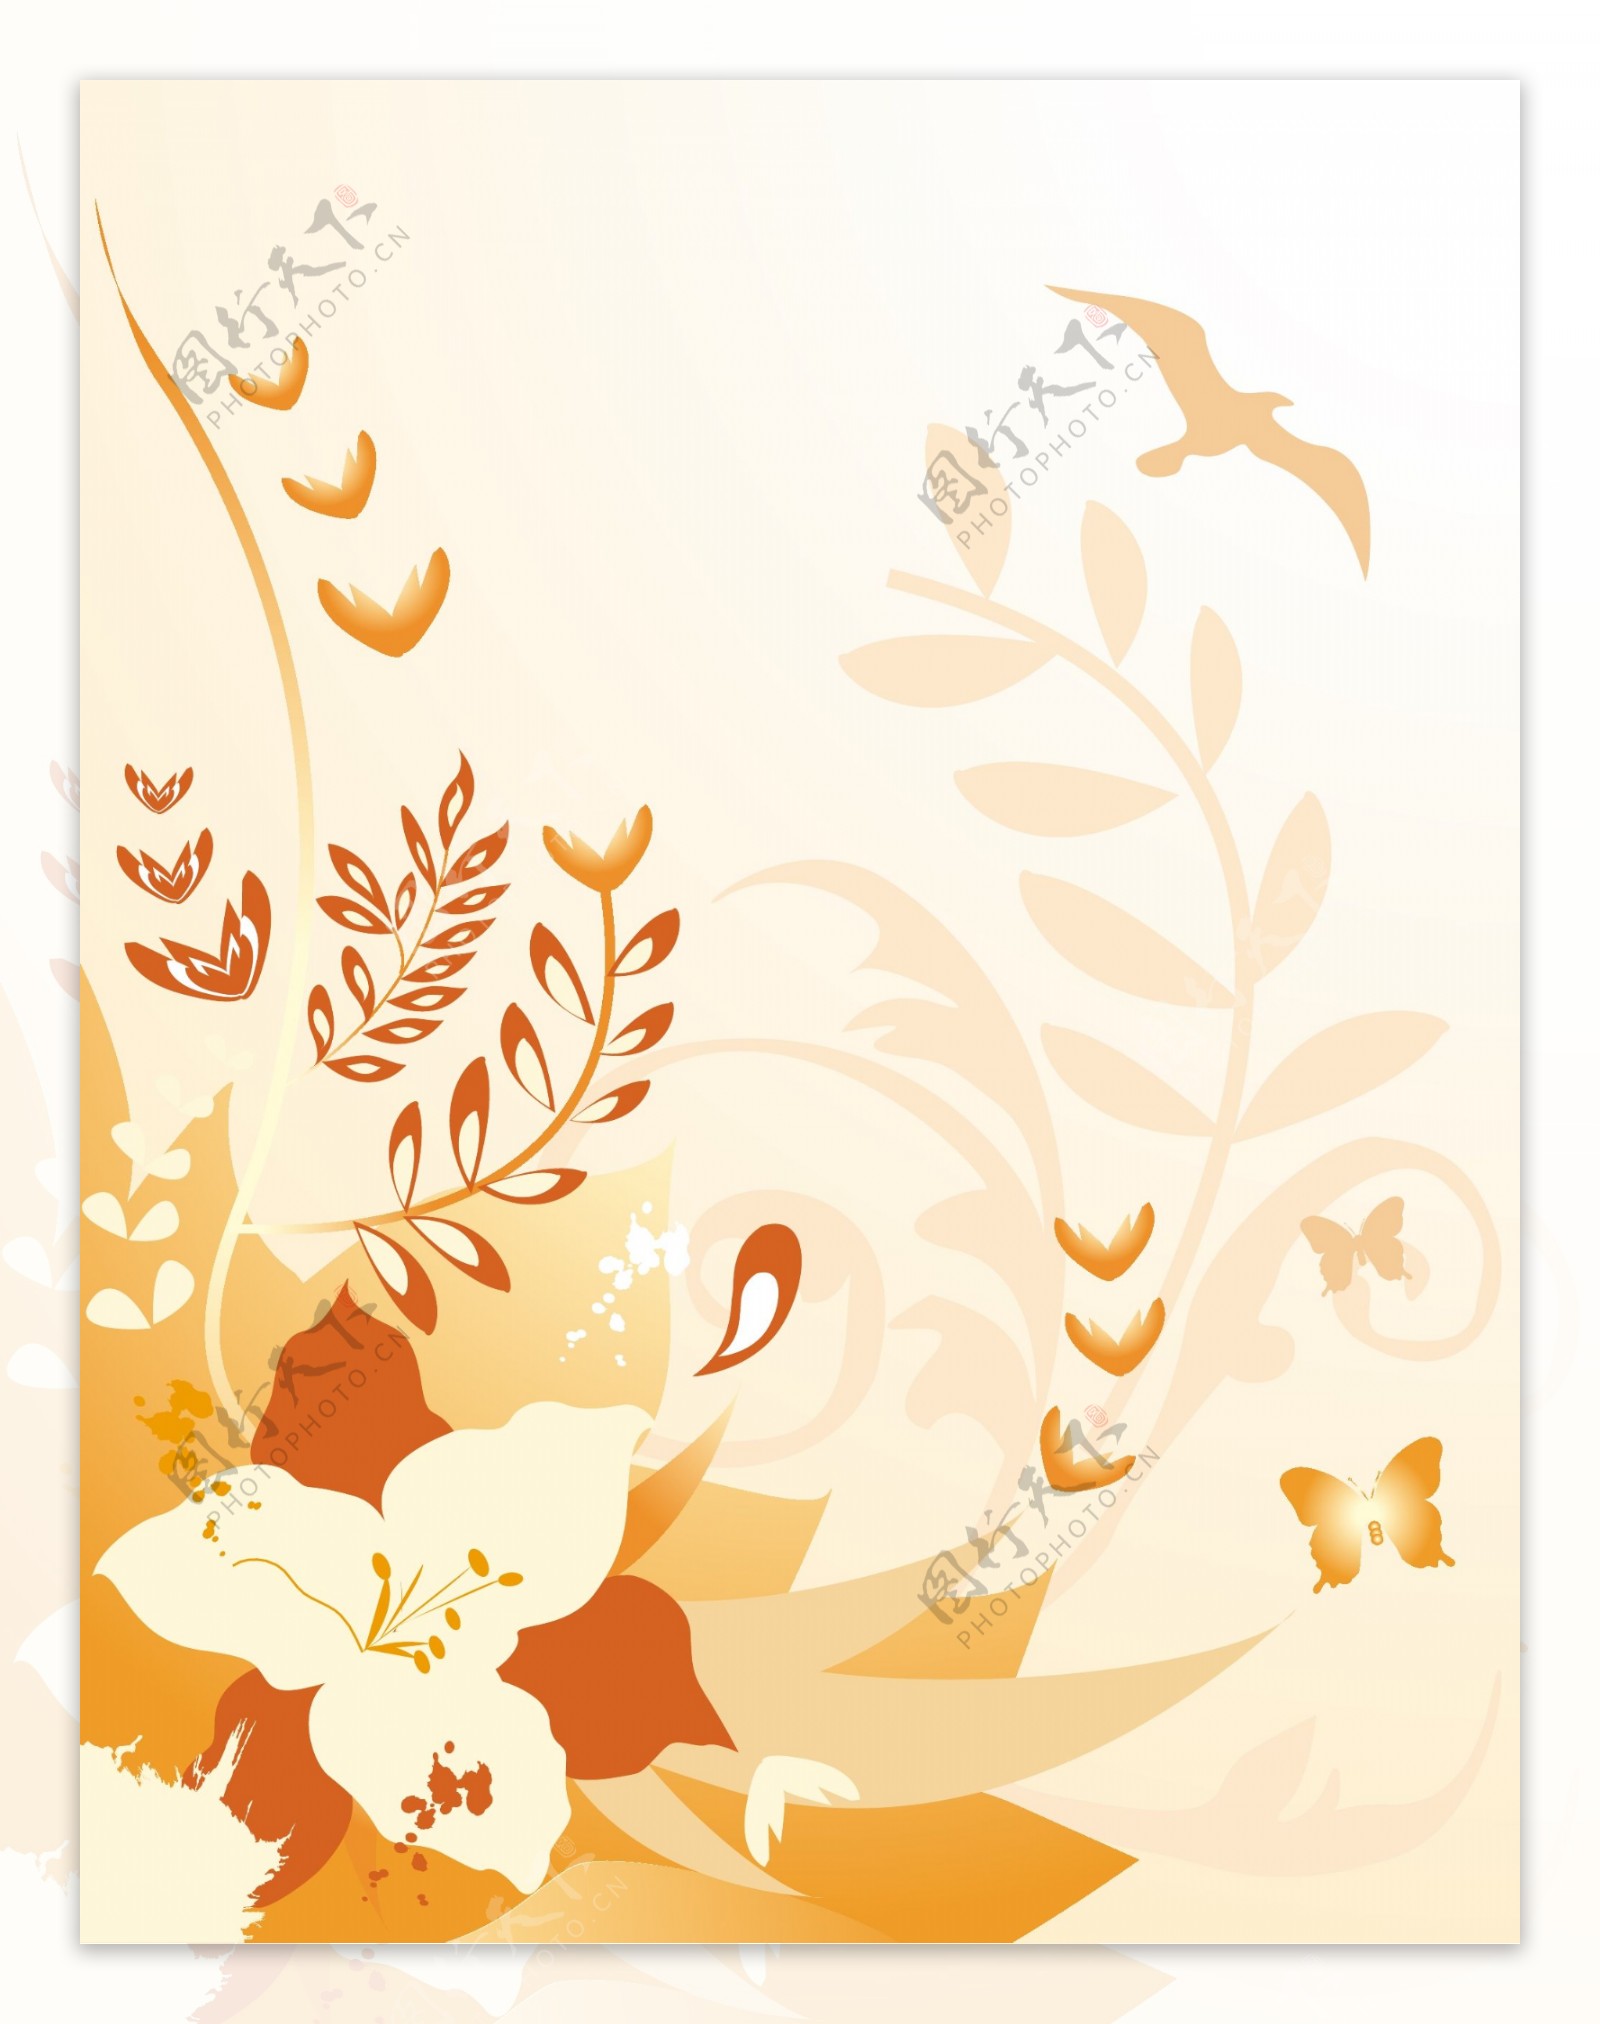 橙色飞鸟枝条和花朵插画